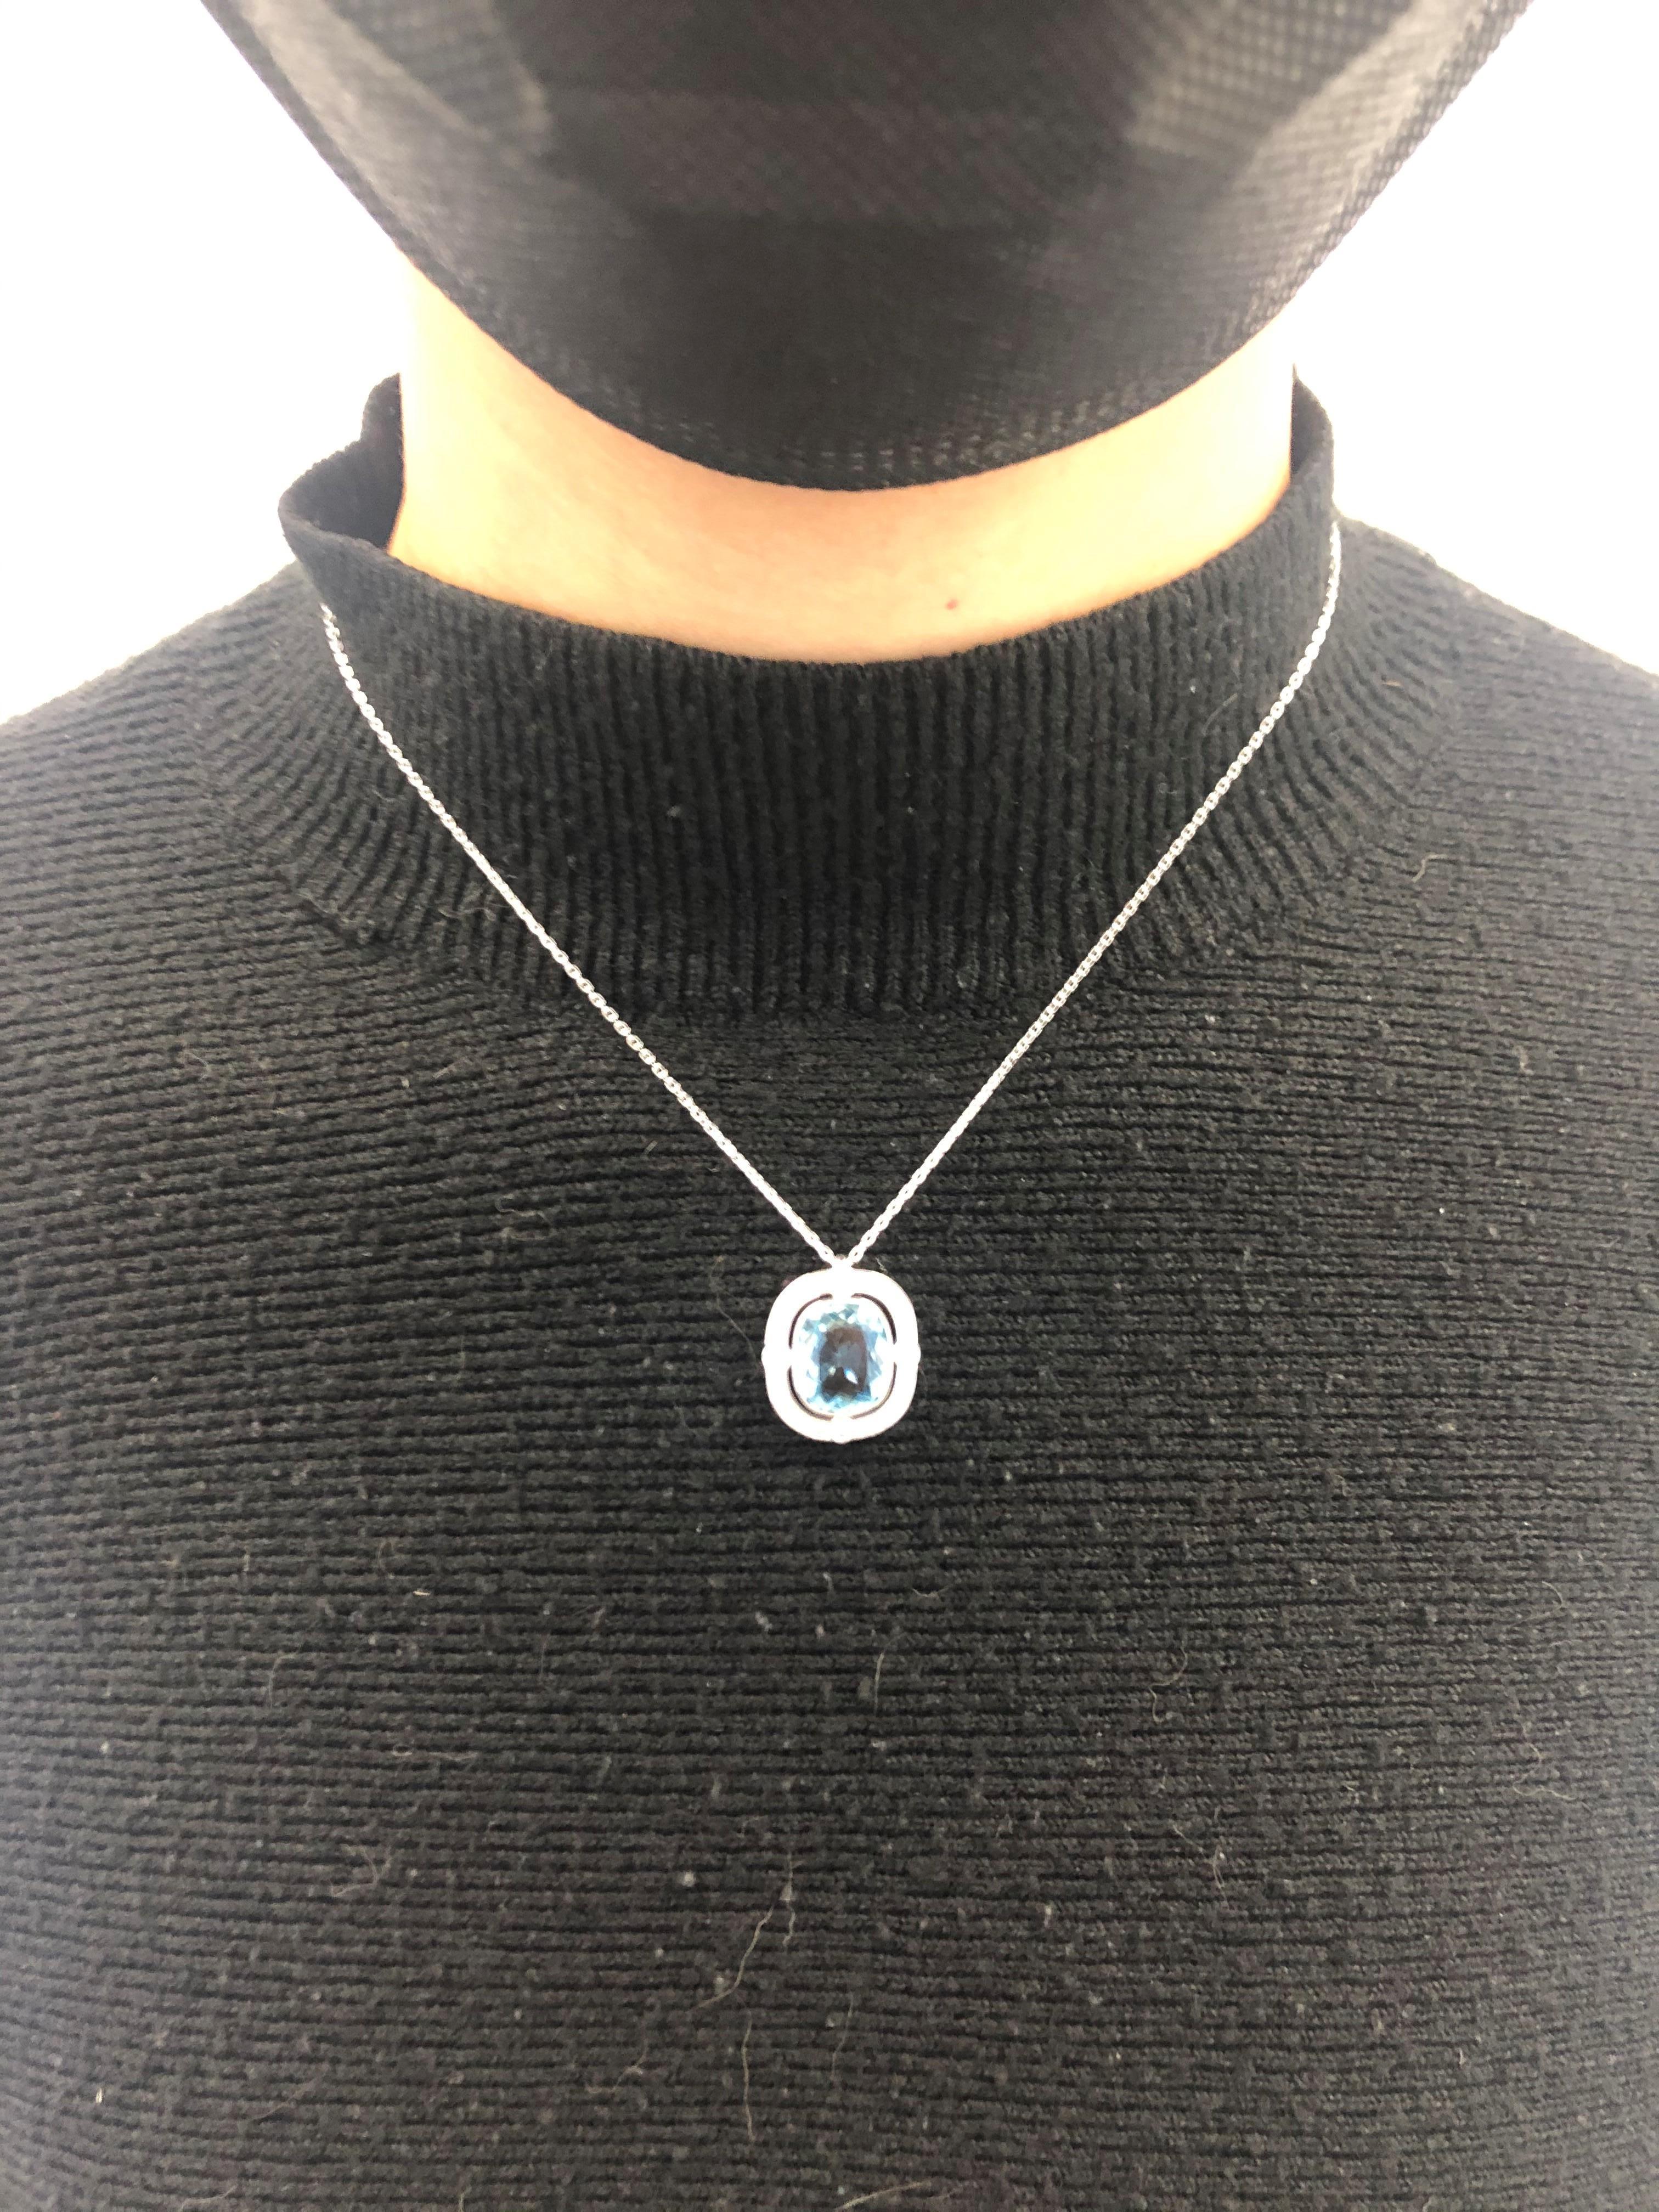 Aquamarine and Diamond Pendant Necklace in Platinum 950 and 18 Karat White Gold 4